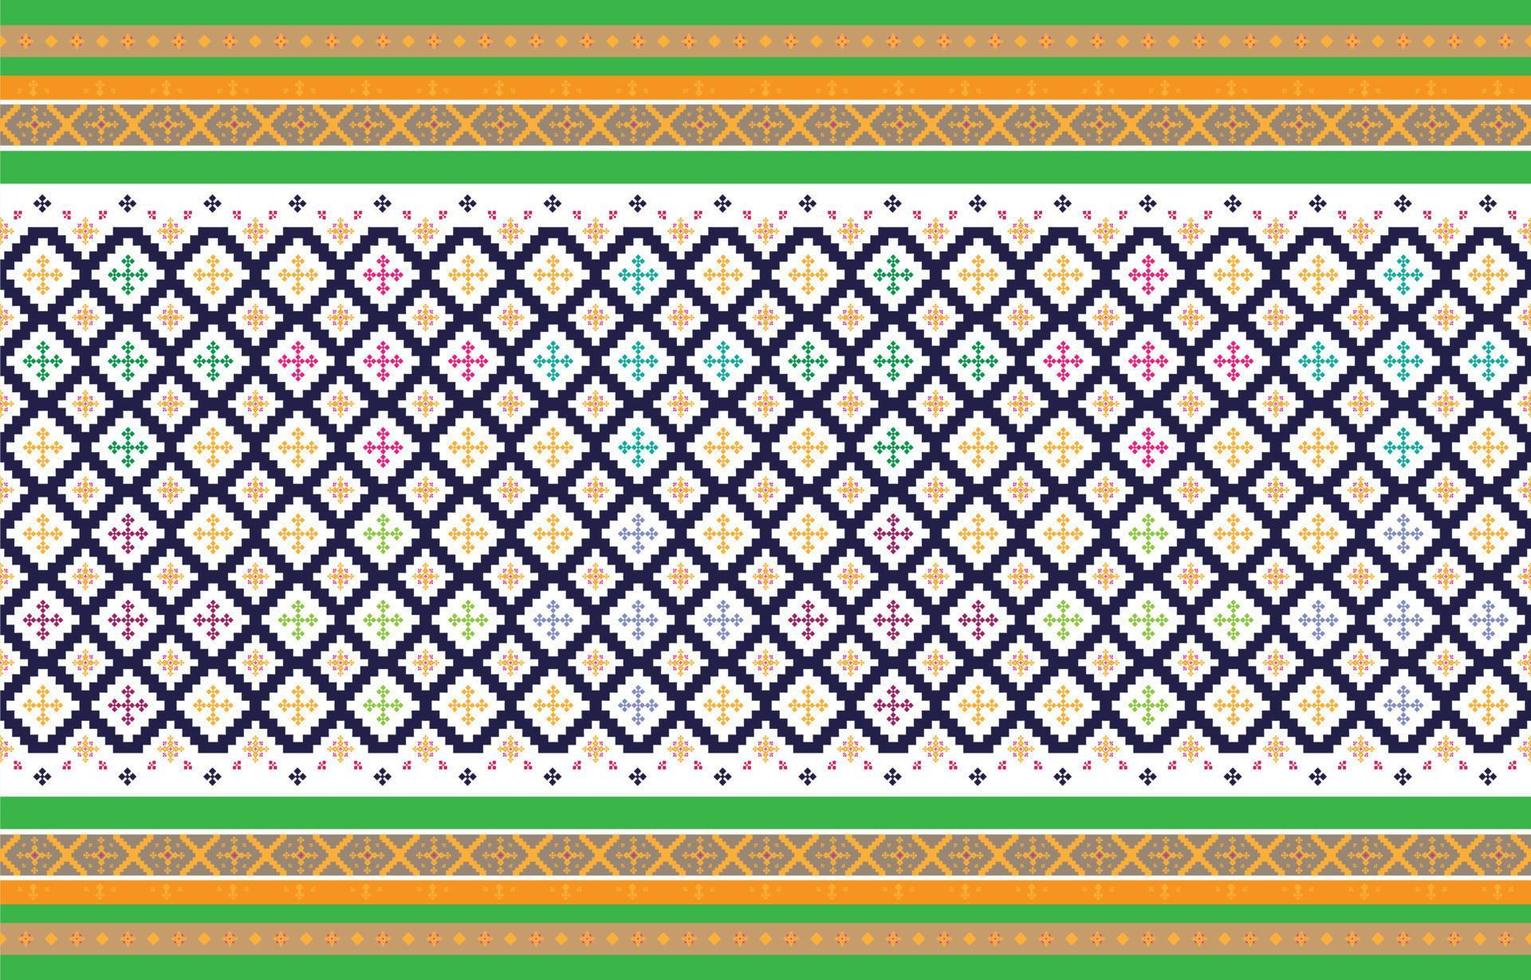 padrões geométricos e tribais abstratos, padrões de tecidos locais de design de uso, design inspirado em tribos indígenas. ilustração vetorial geométrica vetor